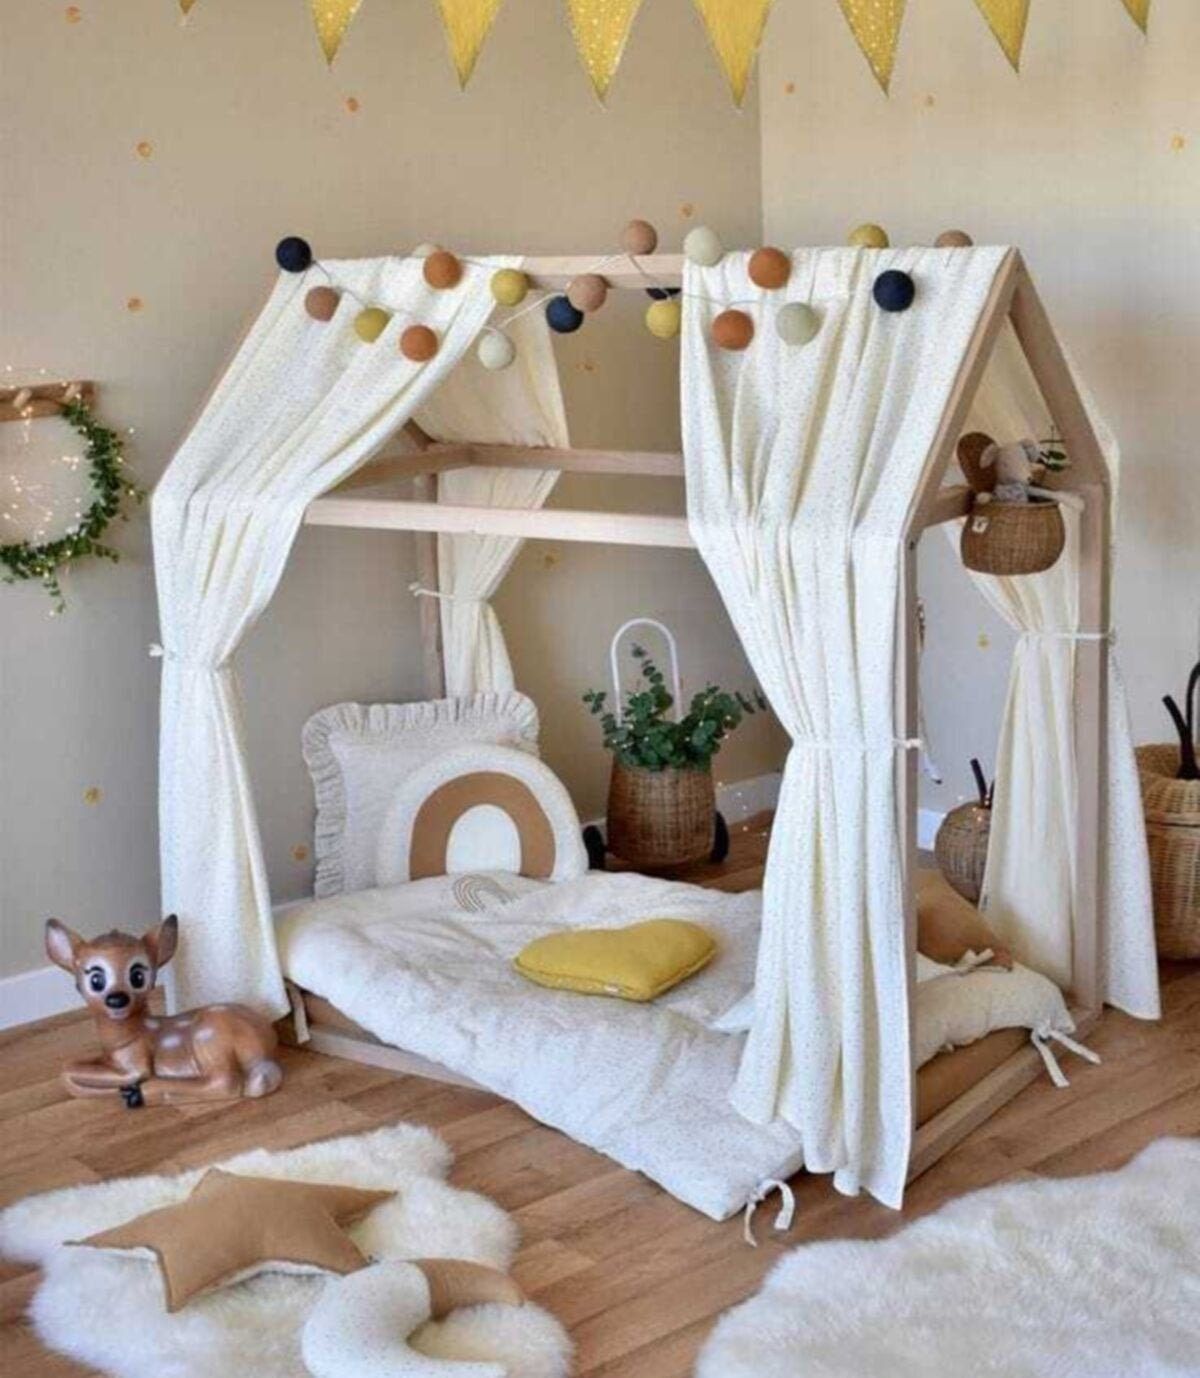 The Wonderful World of Children’s Bedding